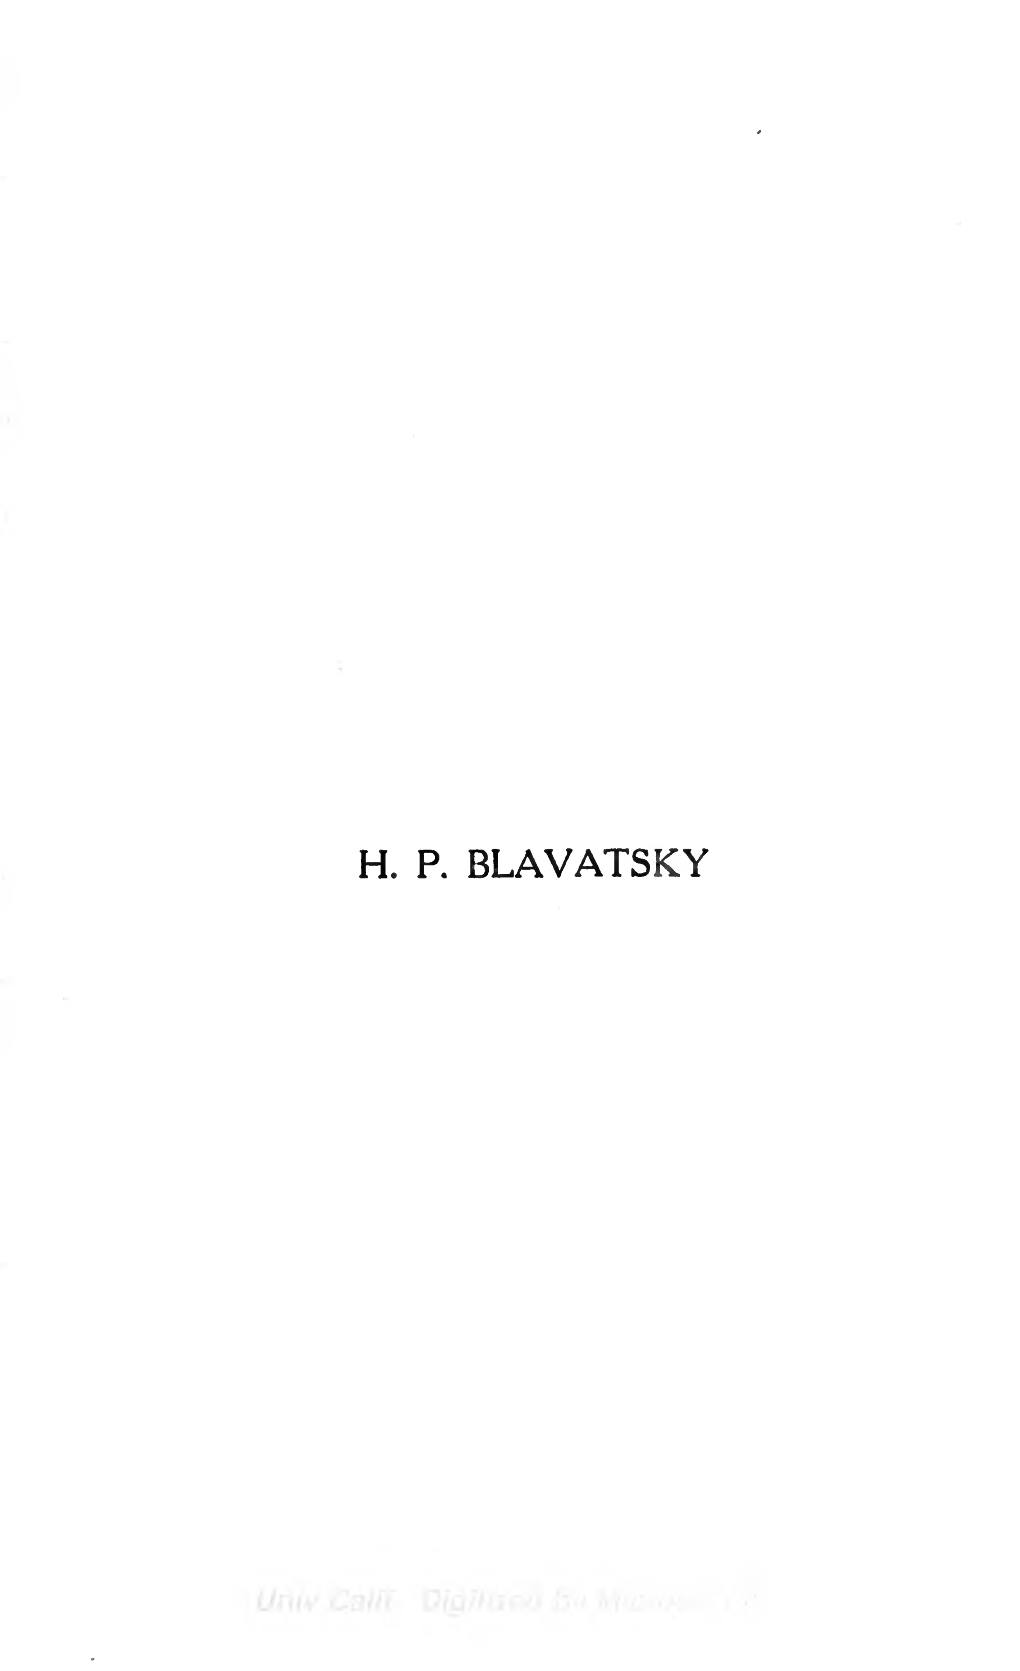 H.P. Blavatsky: a Great Betrayal